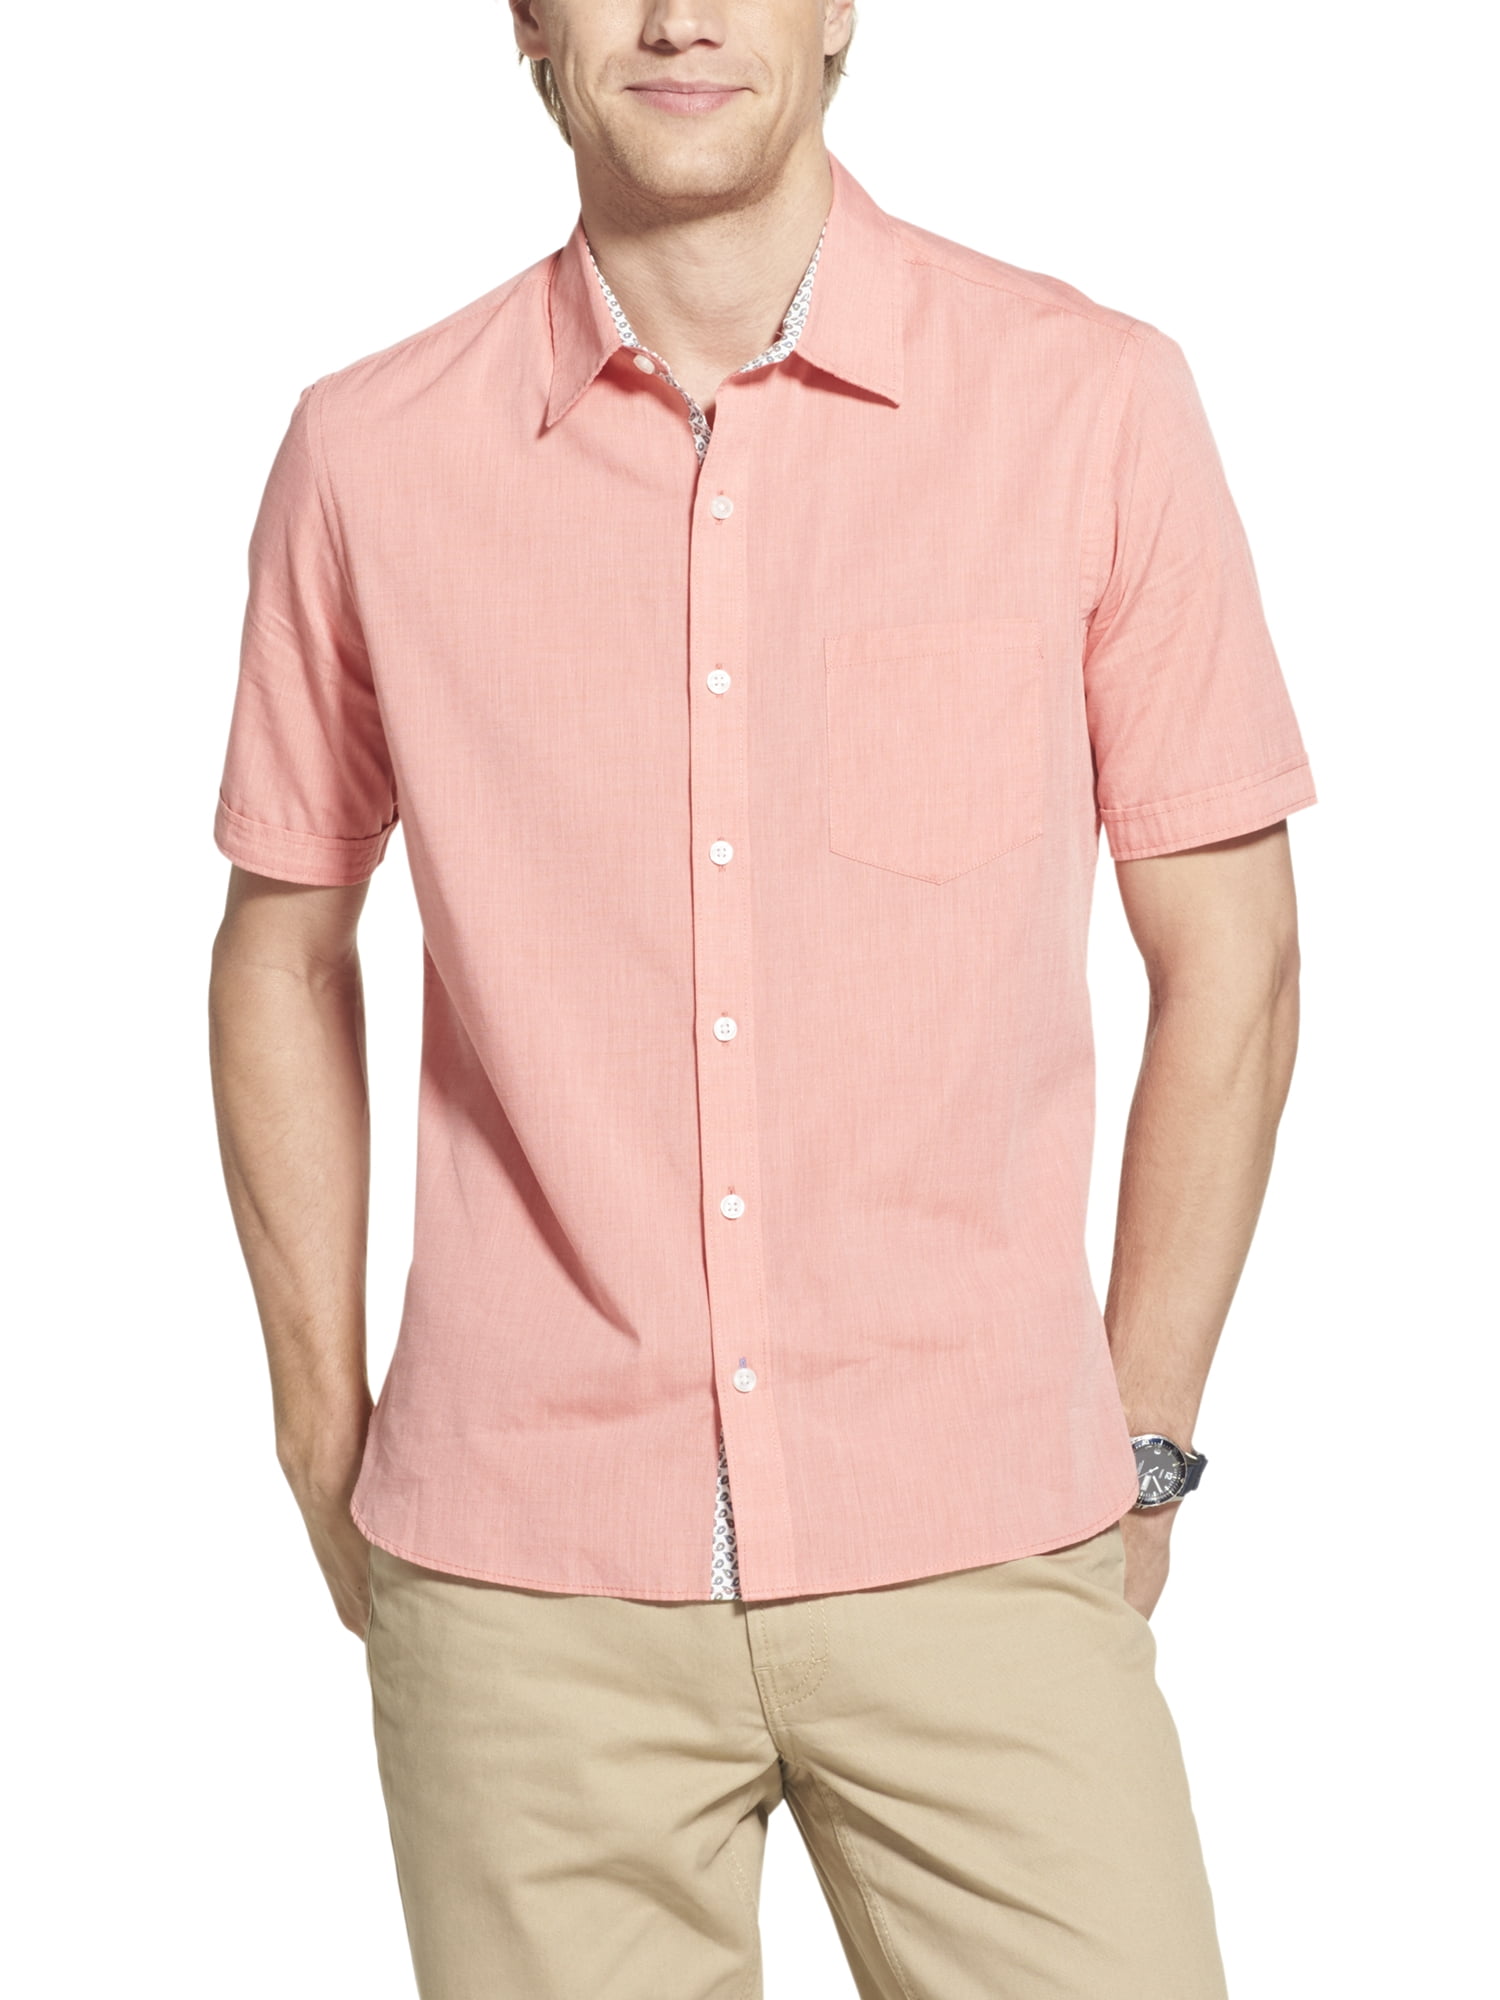 Geoffrey Beene Men's Big and Tall Short Sleeve Shirt - Walmart.com